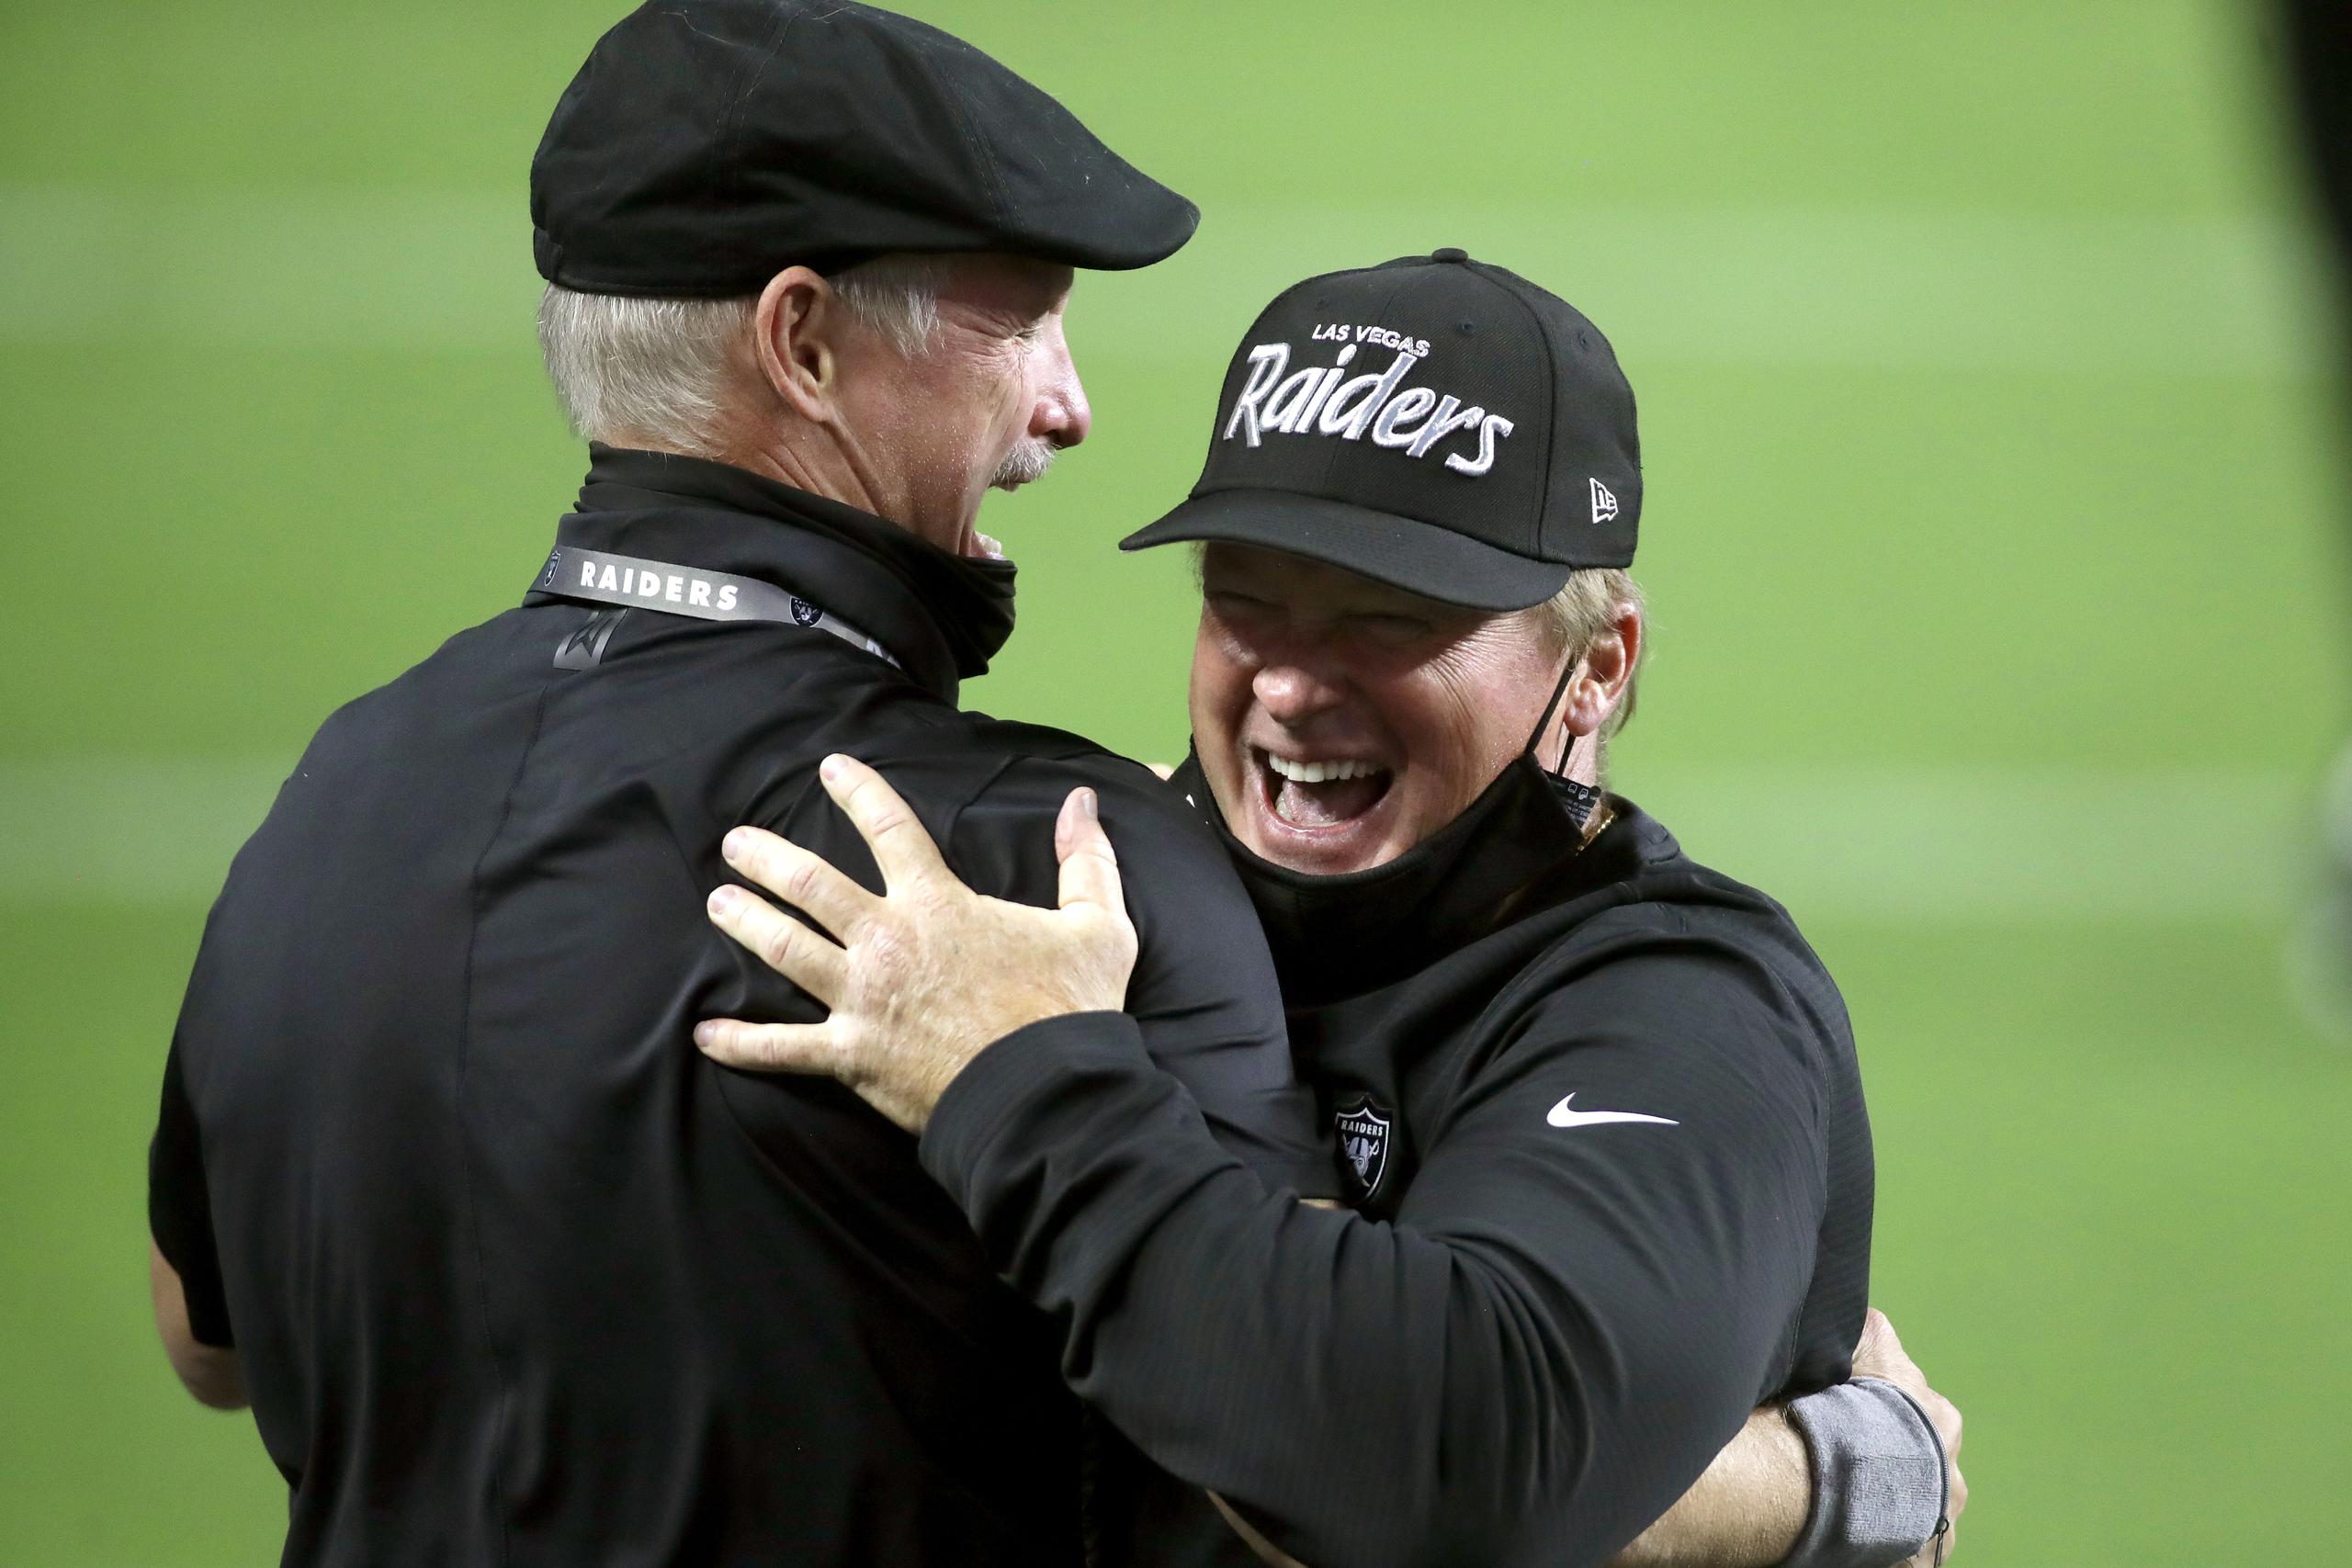 El gerente de los Raiders, Mike Mayock, izquierda, y el dirigente del equipo, Jon Gruden, se abrazan luego de la victoria del lunes sobre Nueva Orleans. Gruden sería multado por violar la regla de uso de la mascarilla.